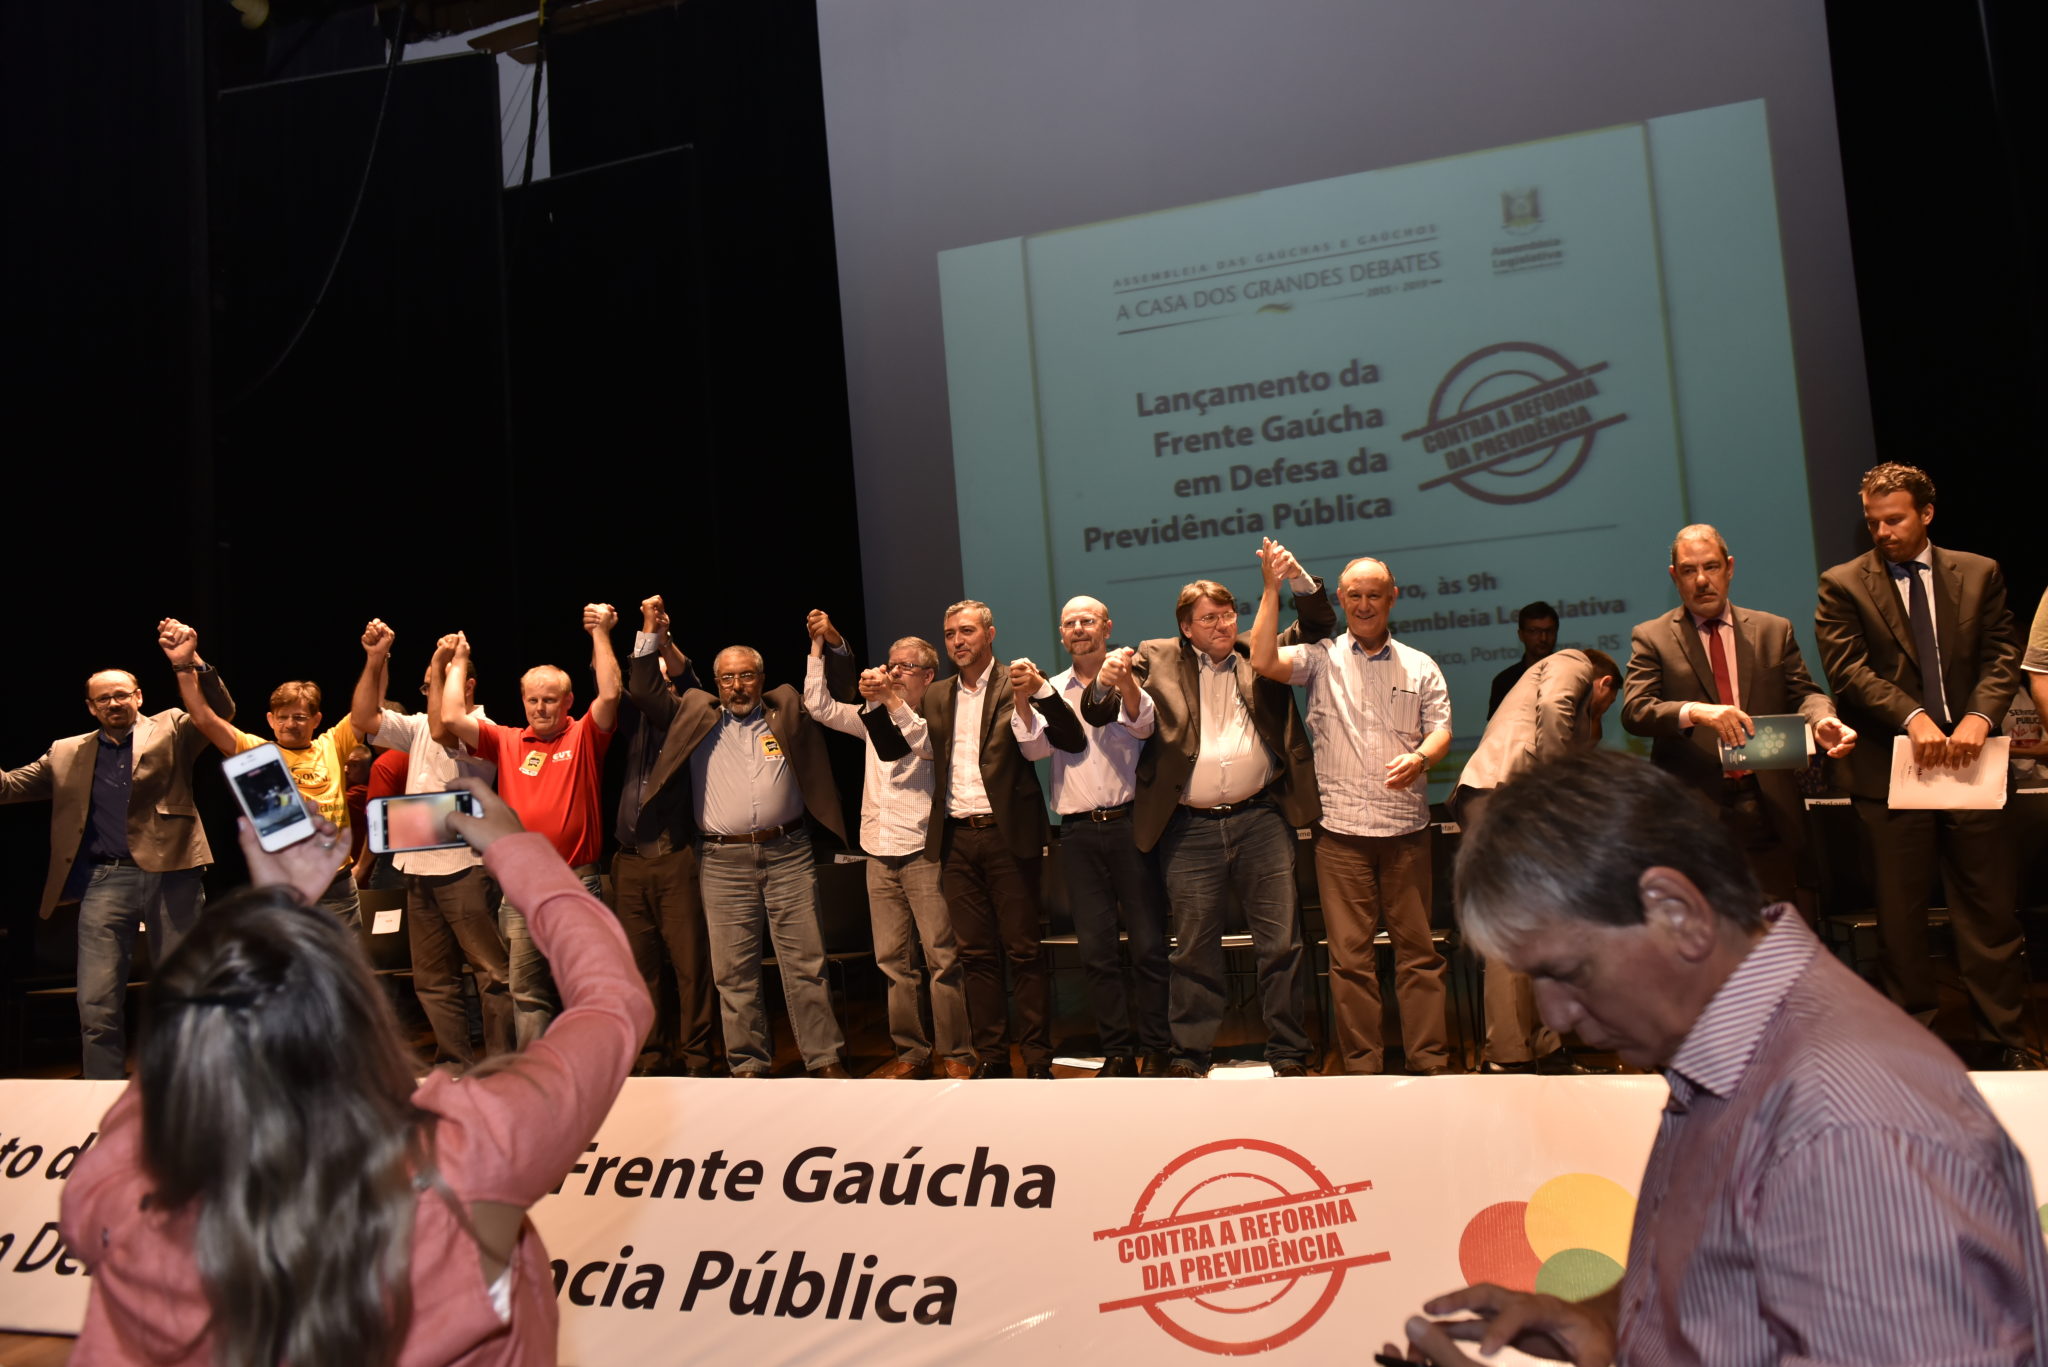 Instalação da Frente Gaúcha em Defesa da Previdência Pública na ALRS